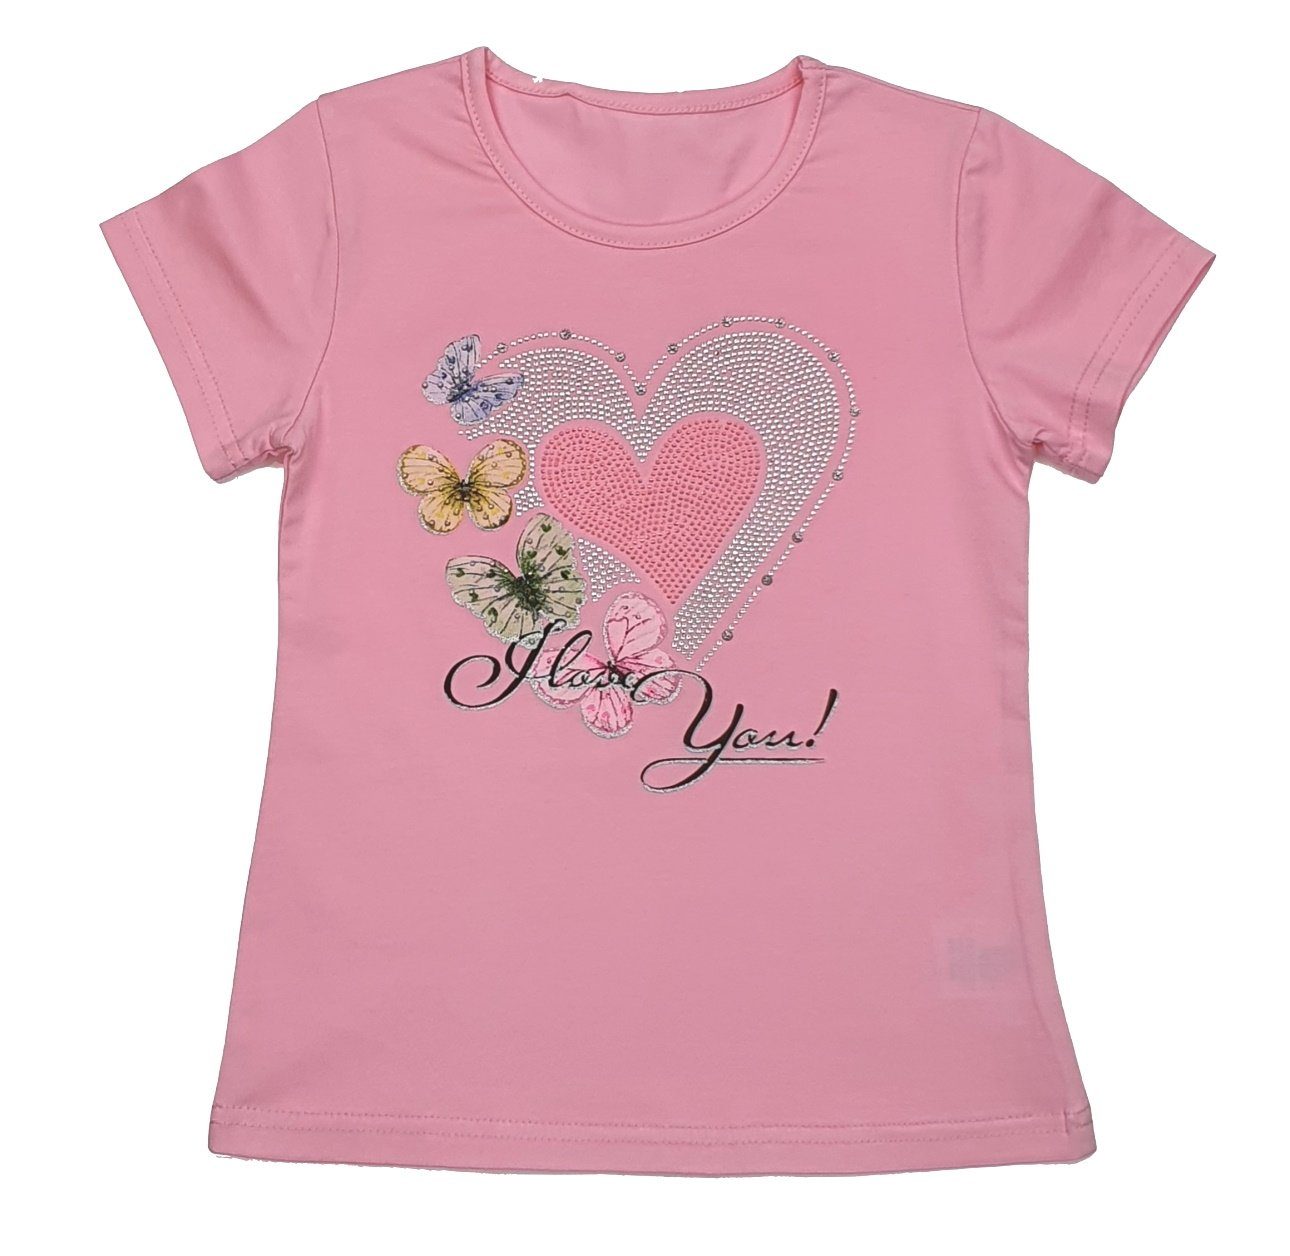 Girls Mädchen Rosa Fashion T-Shirt MS87 T-Shirt Sommer Shirt